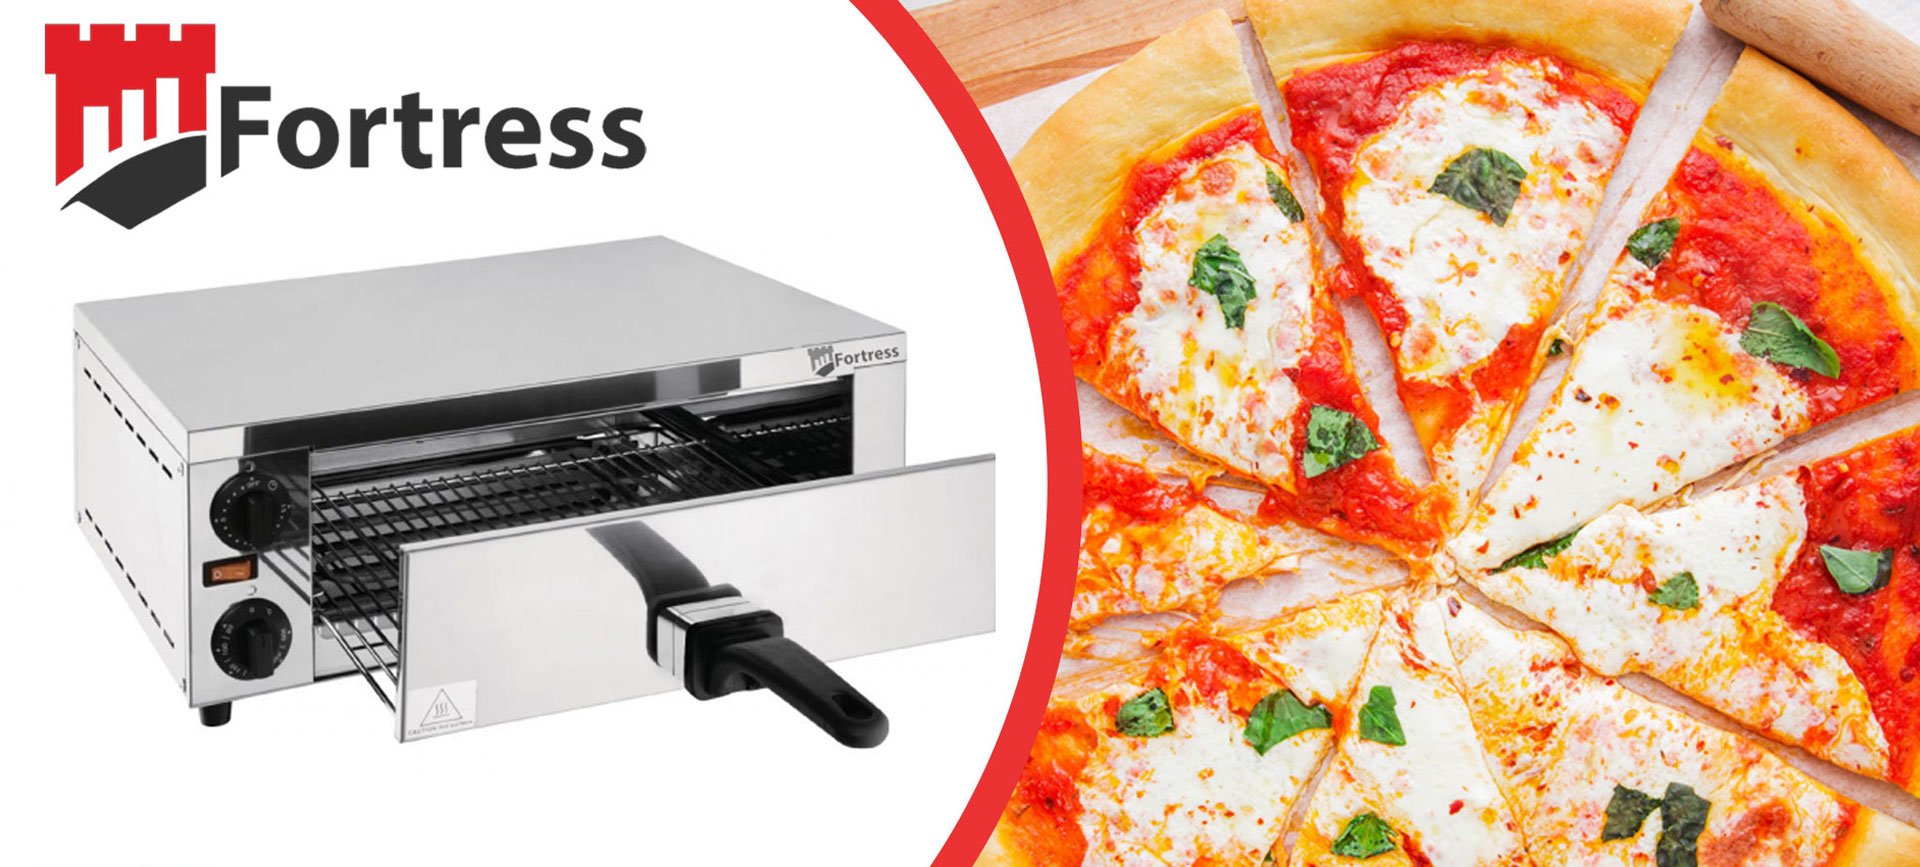 New: Fortress Multi Purpose Grill & Pizza Oven